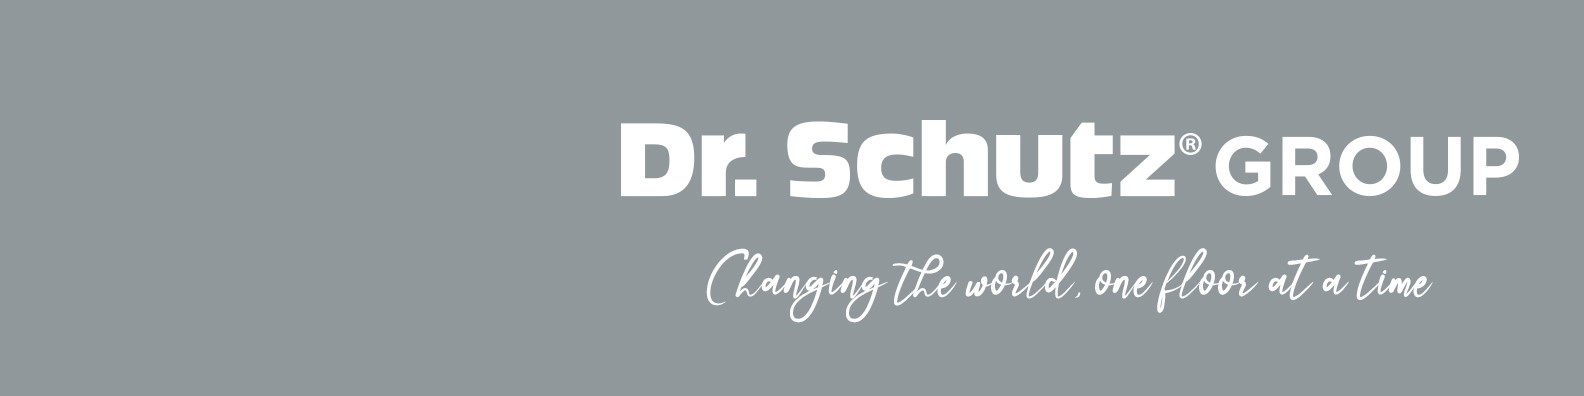 Einstiegsgehalt bei Dr. Schutz GmbH